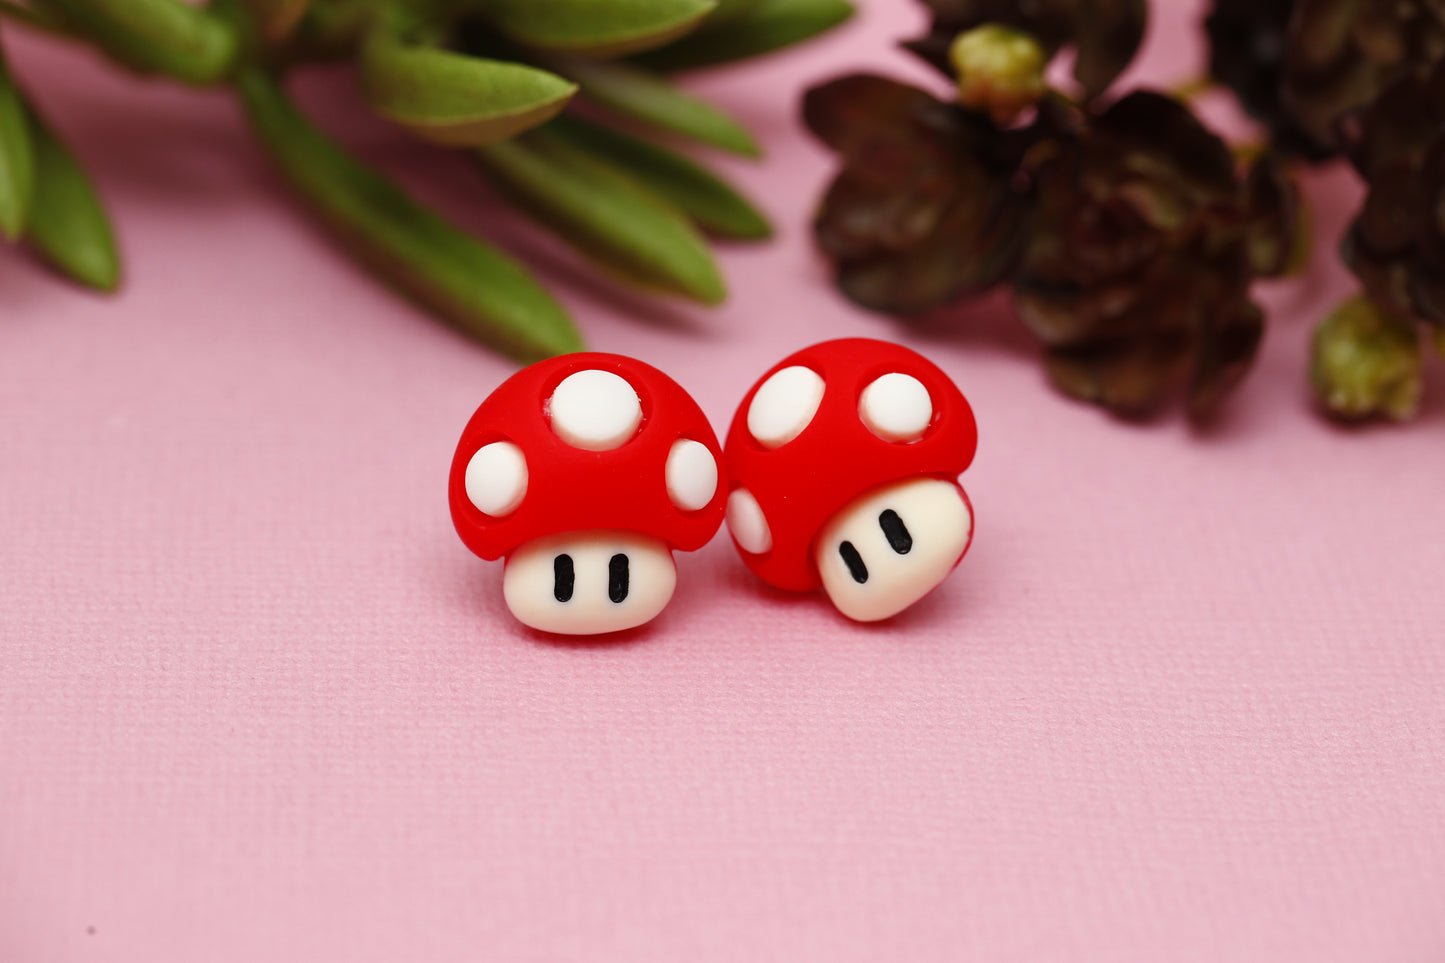 Mushroom stud earrings.